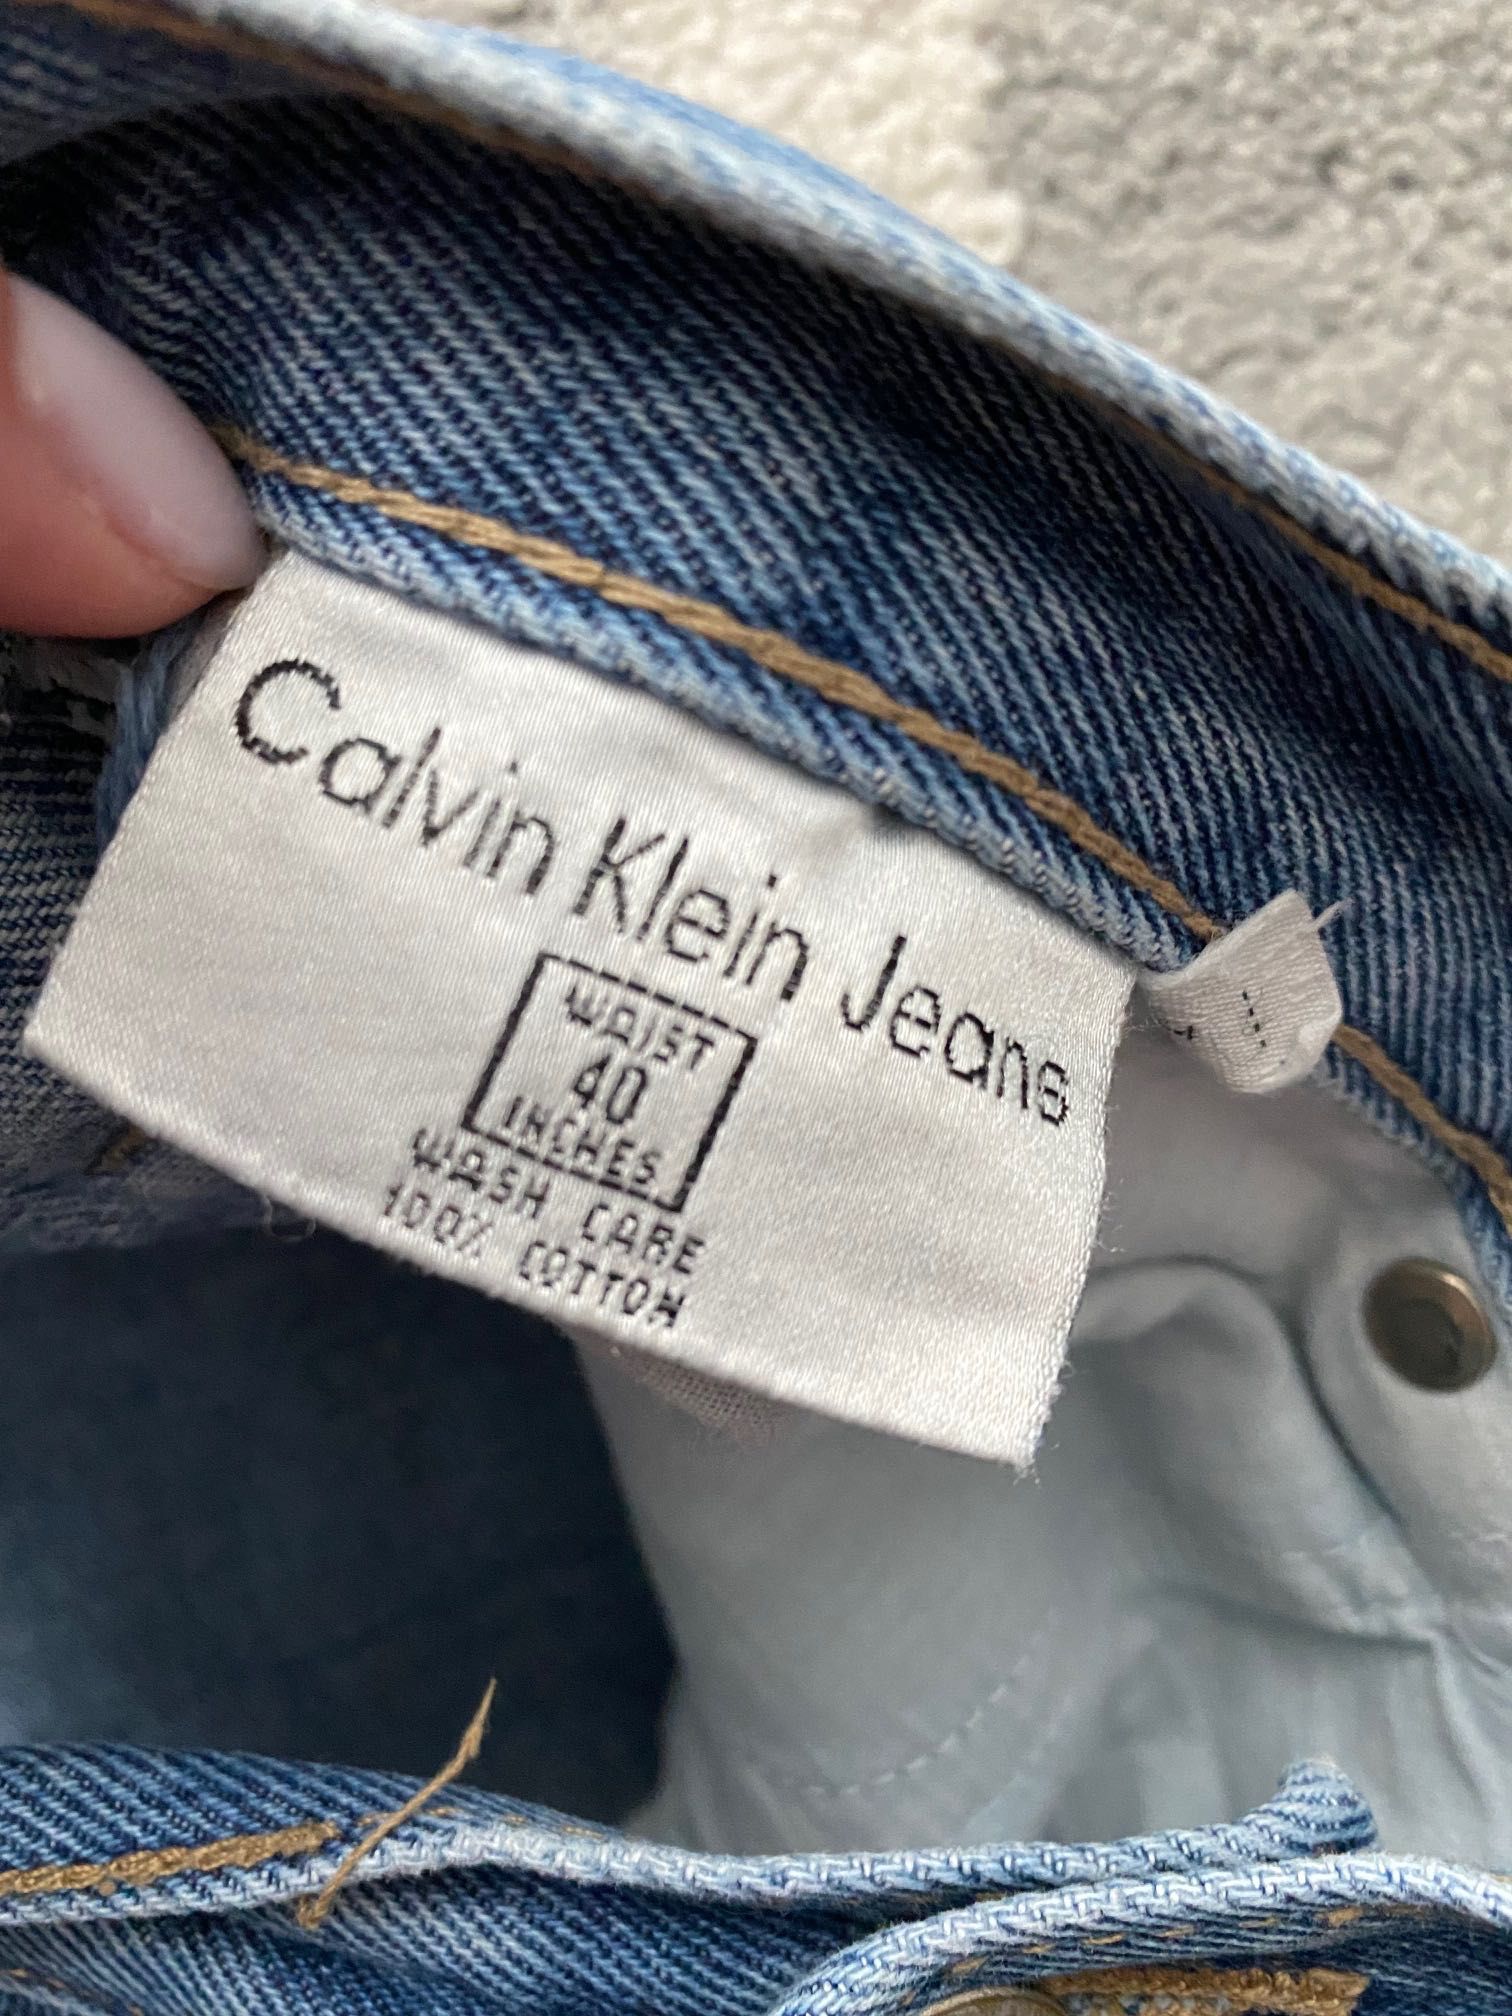 Spodnie Calvin Klein